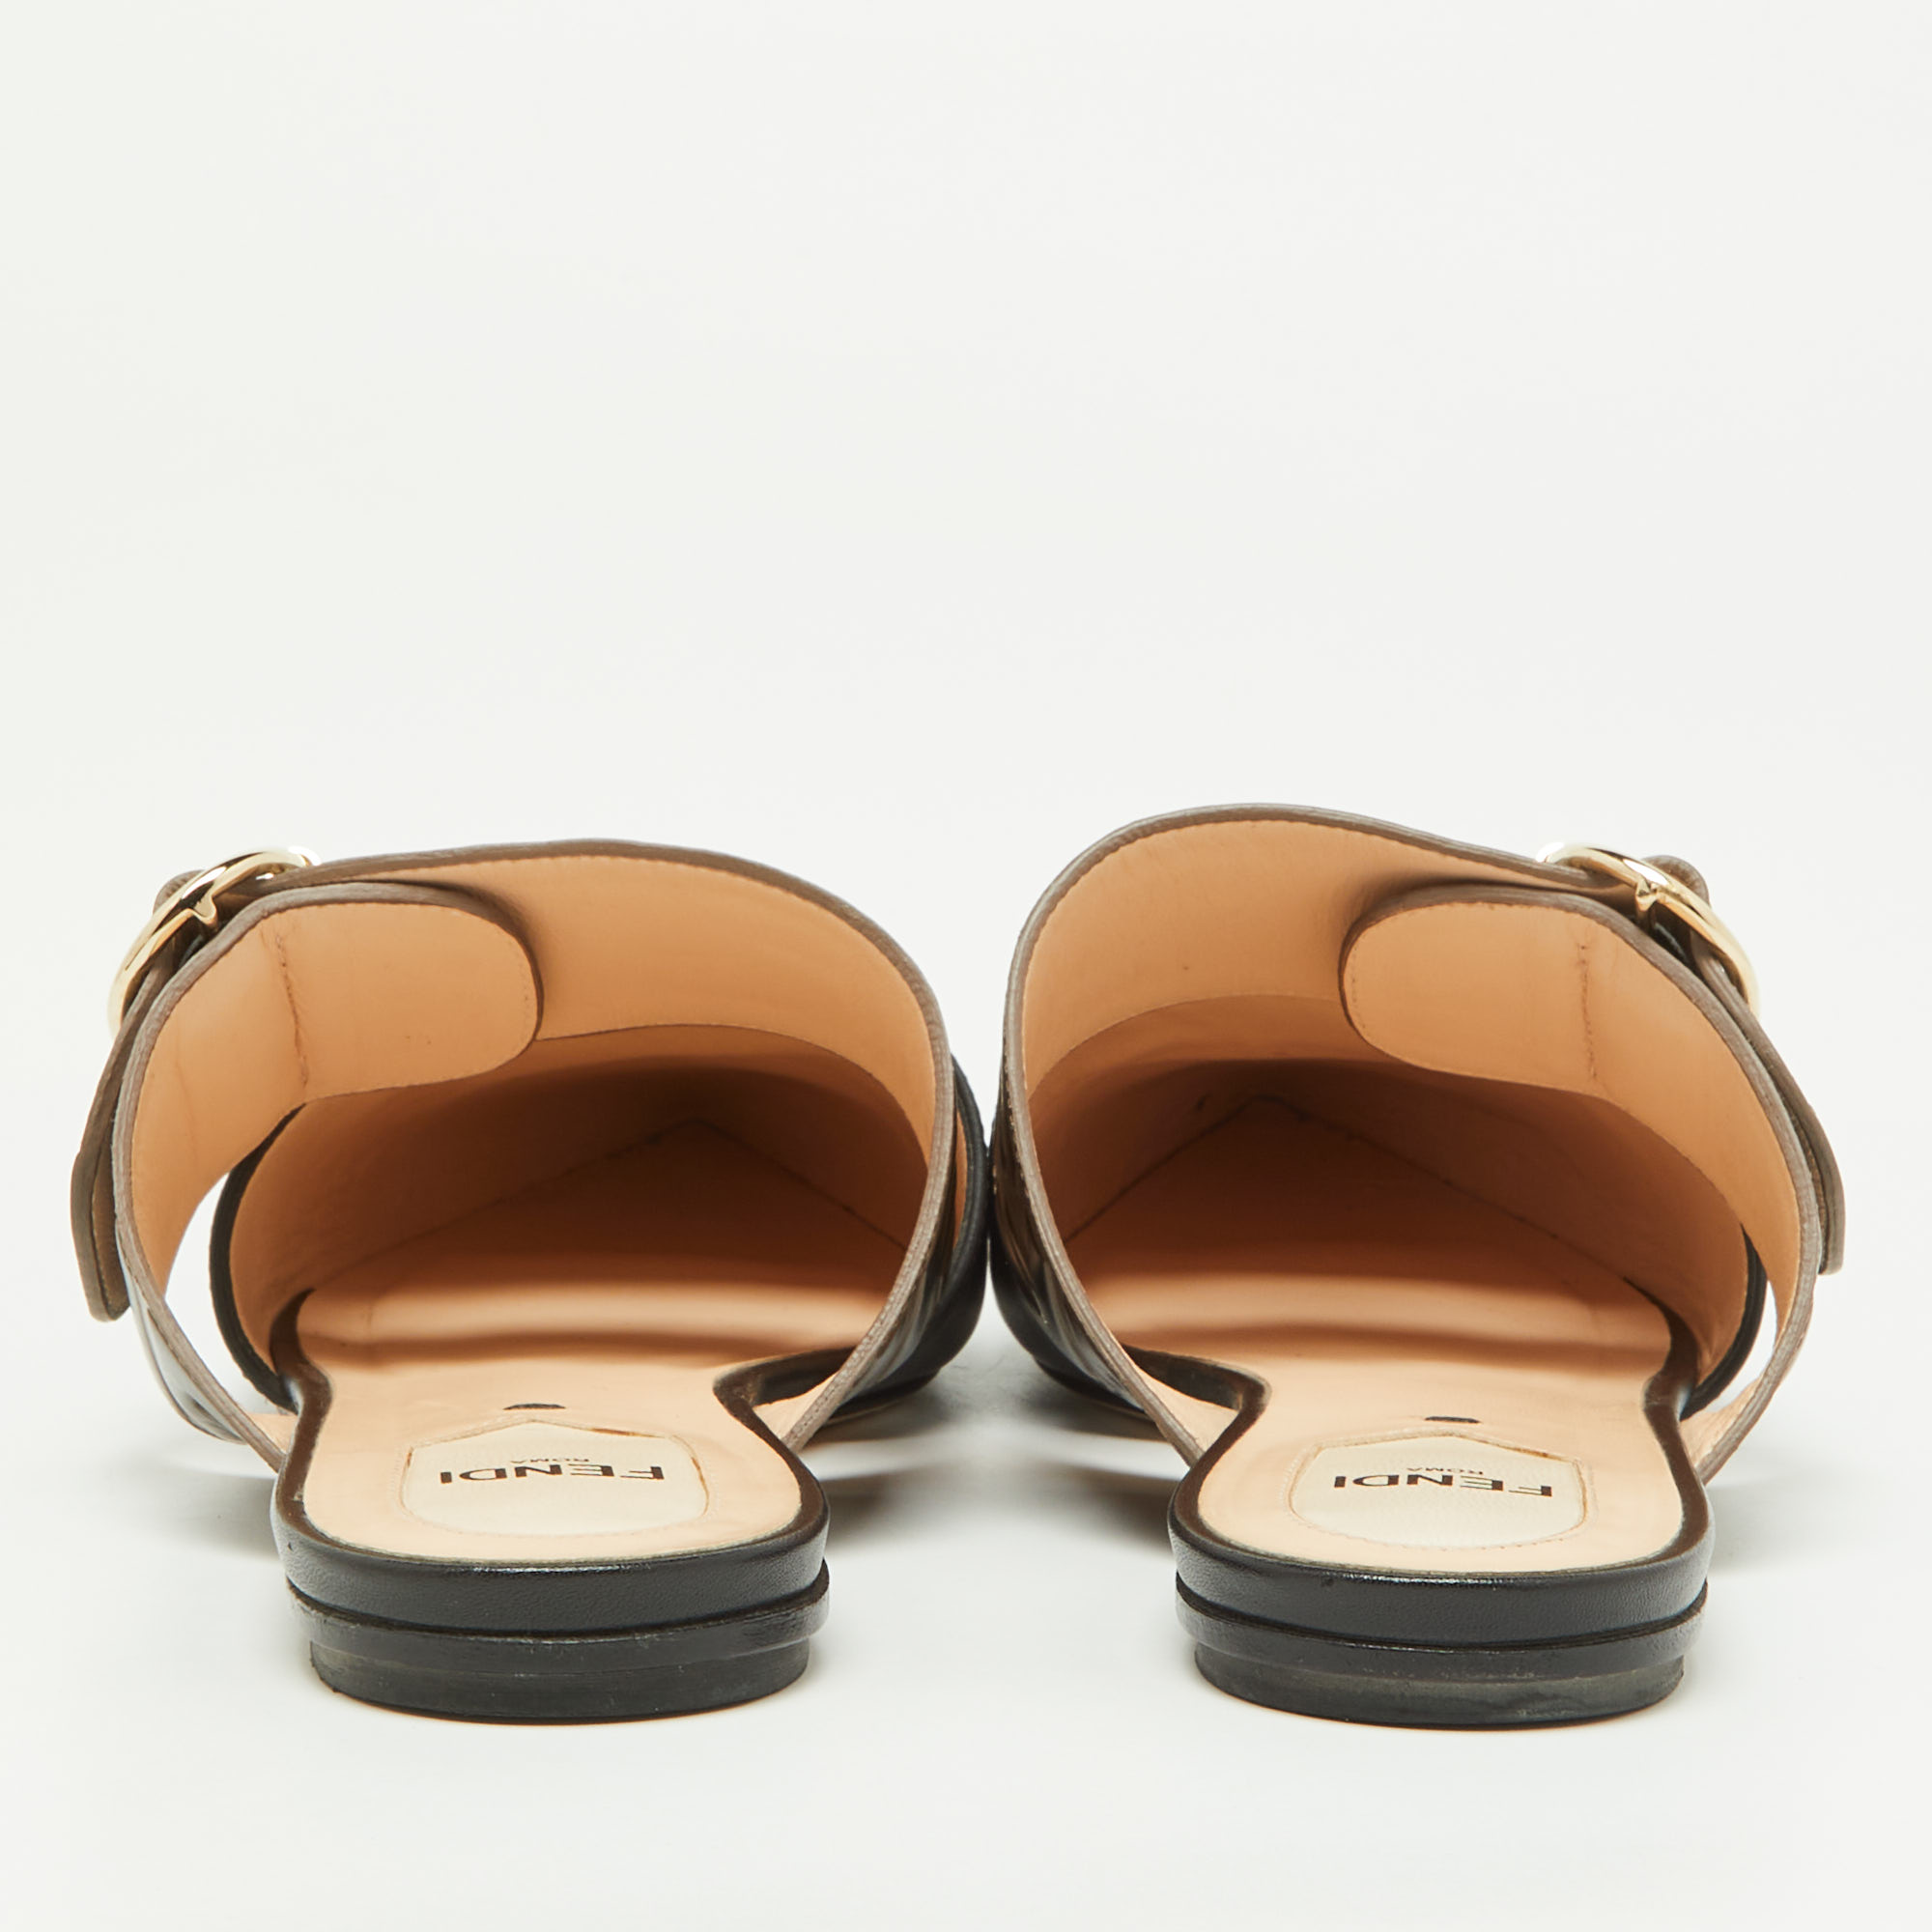 Fendi Black/Tobacco Zucca Leather Flat Mule Sandals Size 37